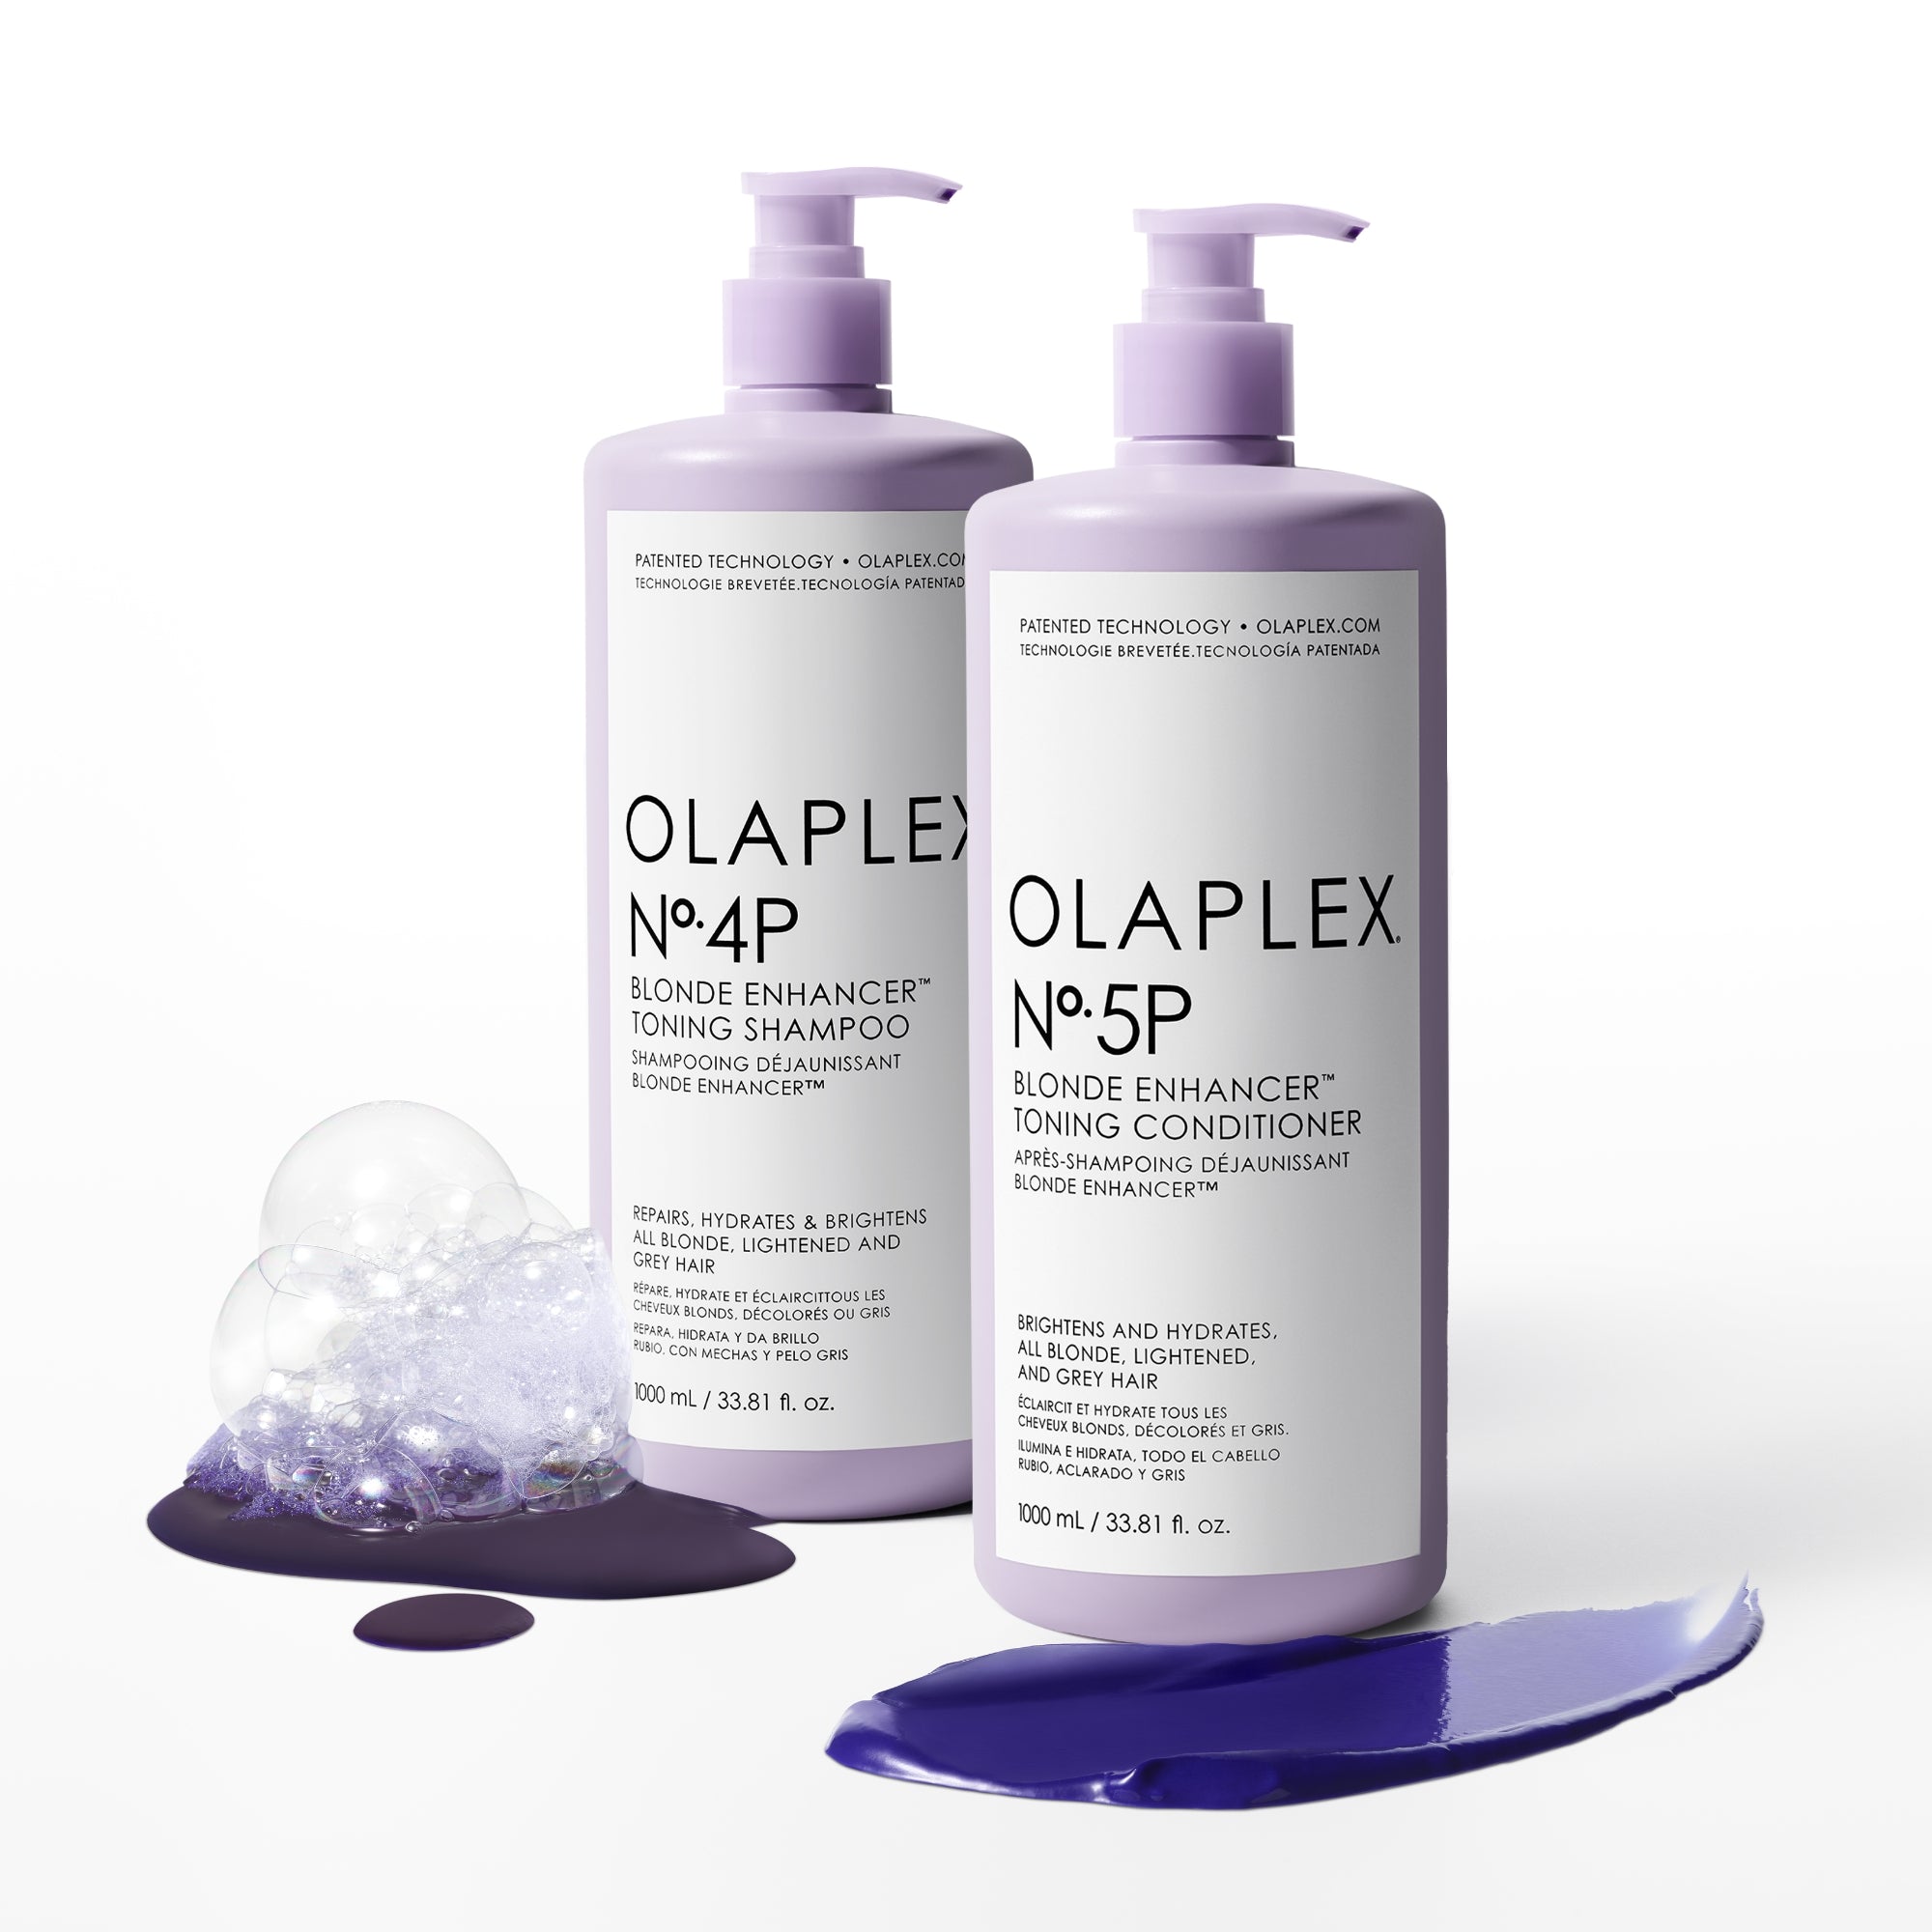 Original OLAPLEX® N°5P Blonde Enhancer Toning Conditioner